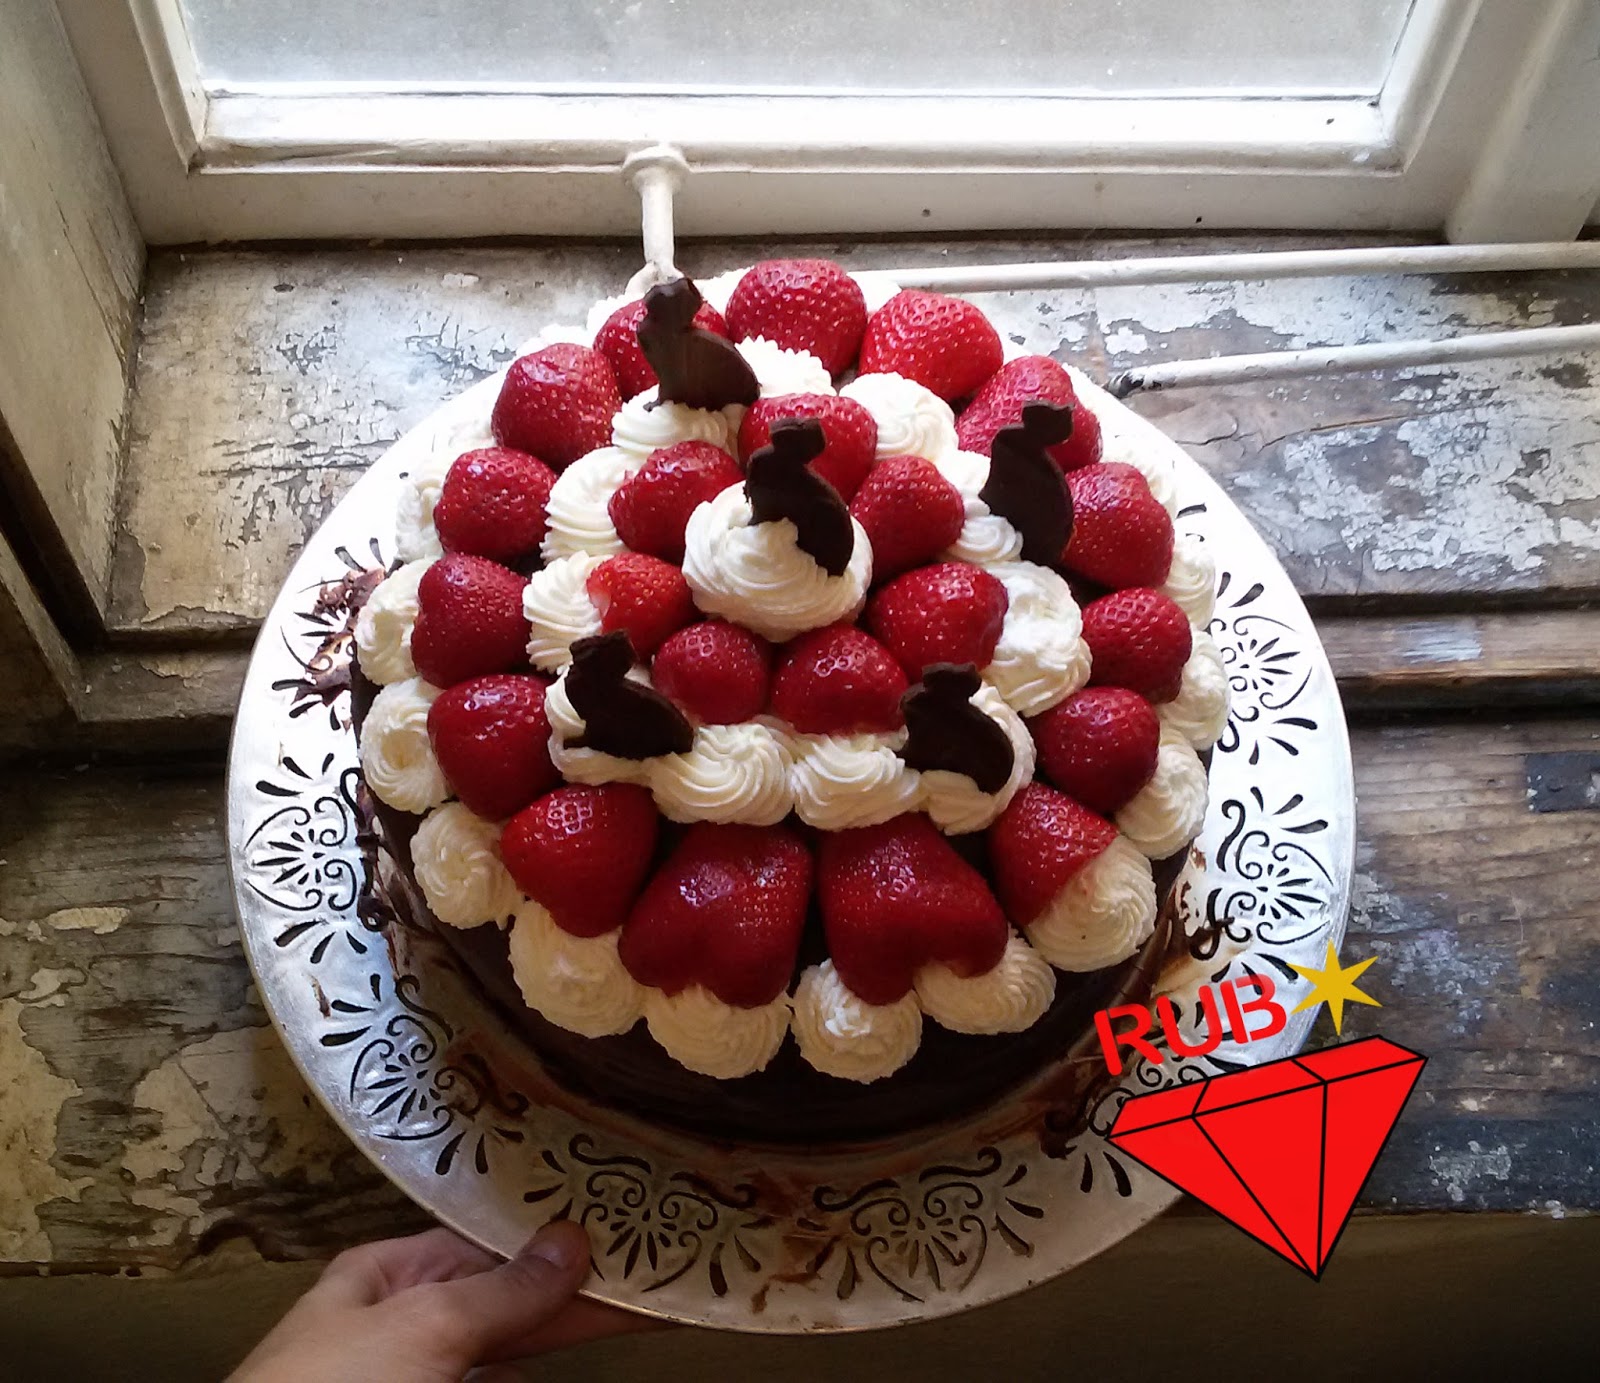 Erdbeer-Schoko-Torte